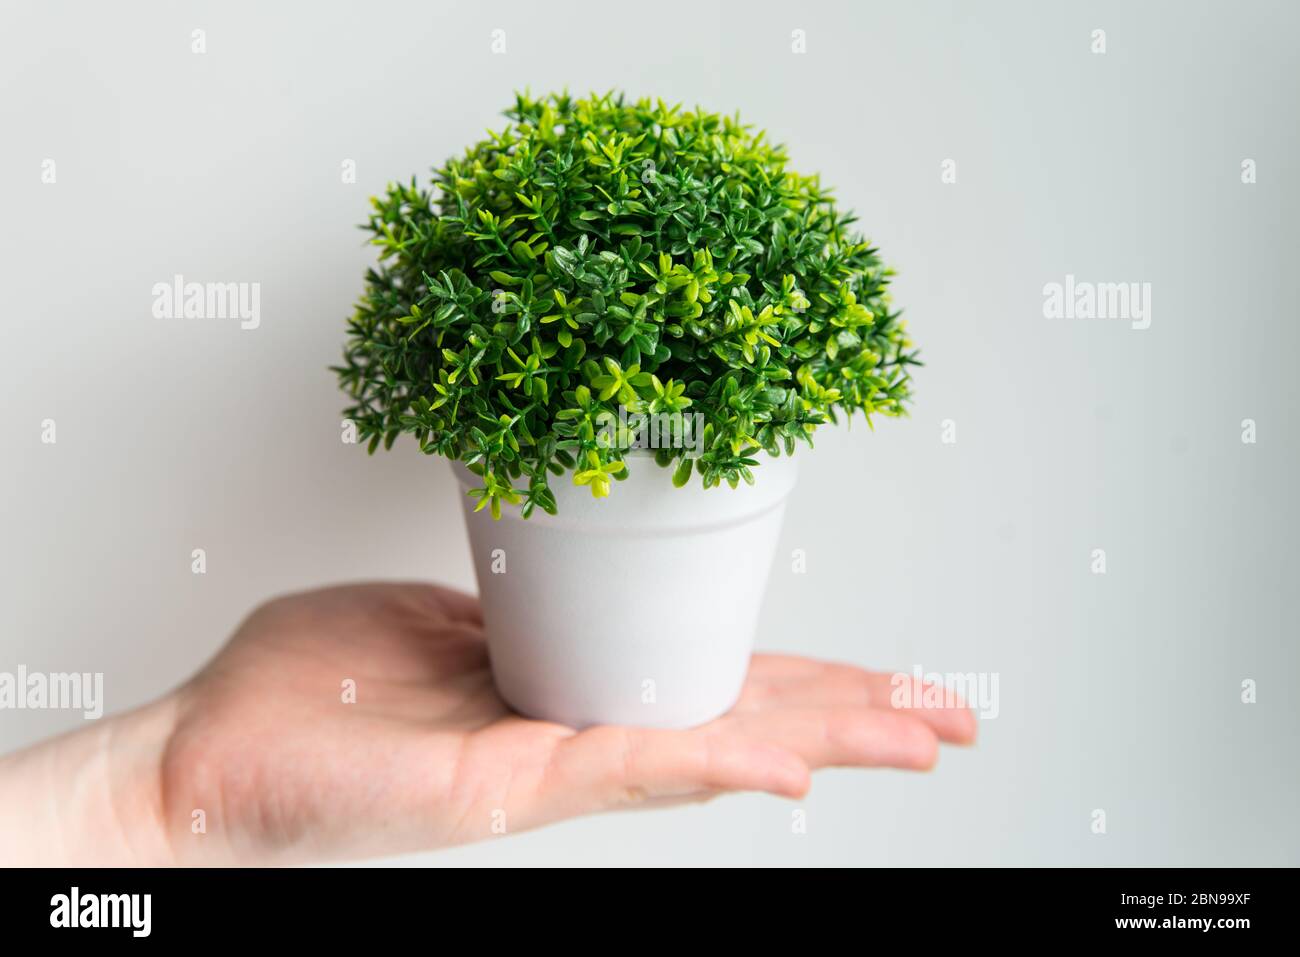 Grüne Pflanze im weißen Topf auf der Hand auf weiß. Pflege- und Gartenkonzept Stockfoto